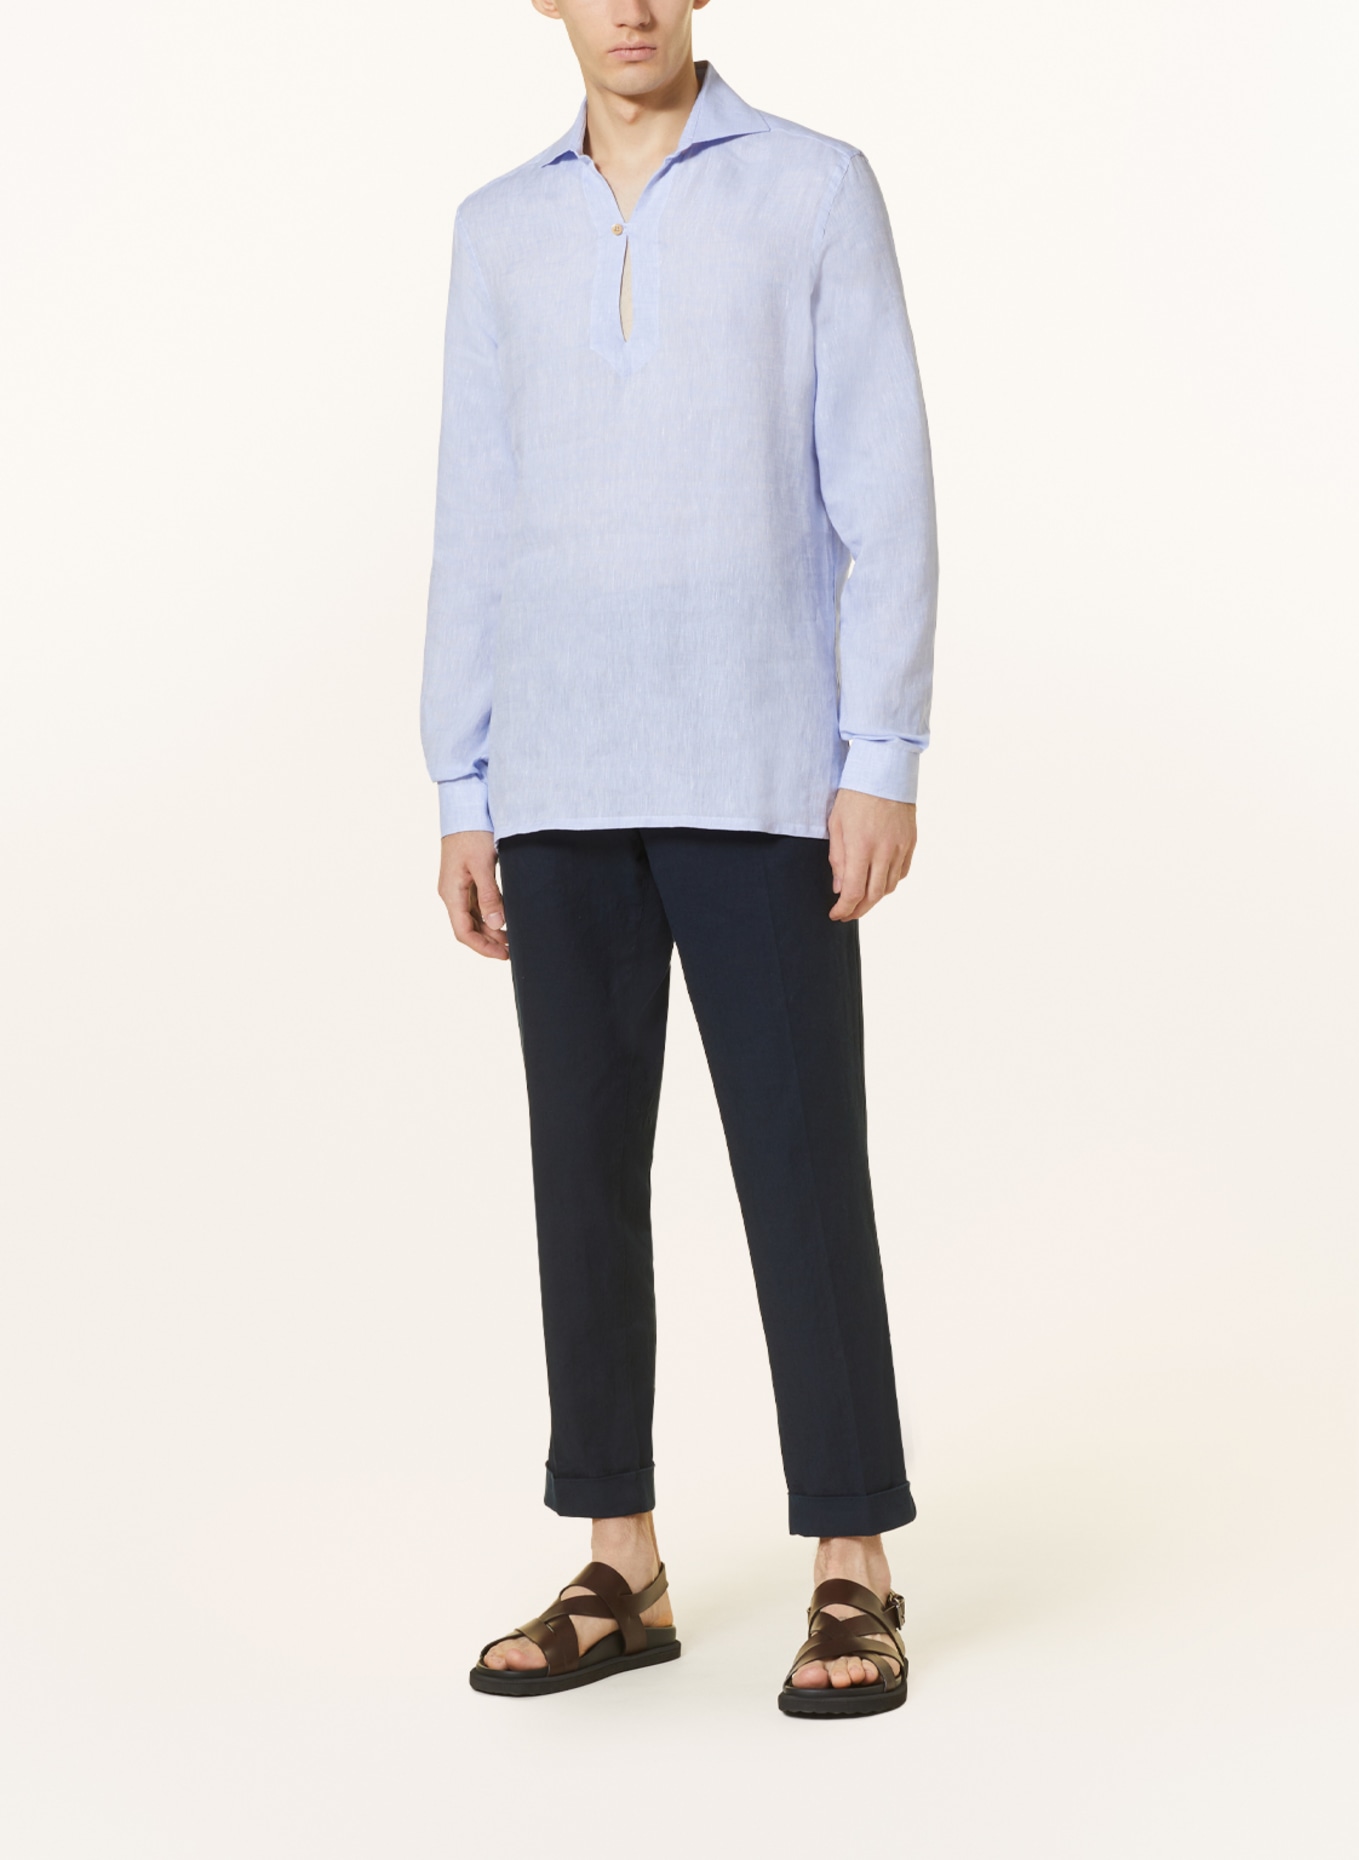 RIPA RIPA Linen shirt regular fit, Color: LIGHT BLUE (Image 2)